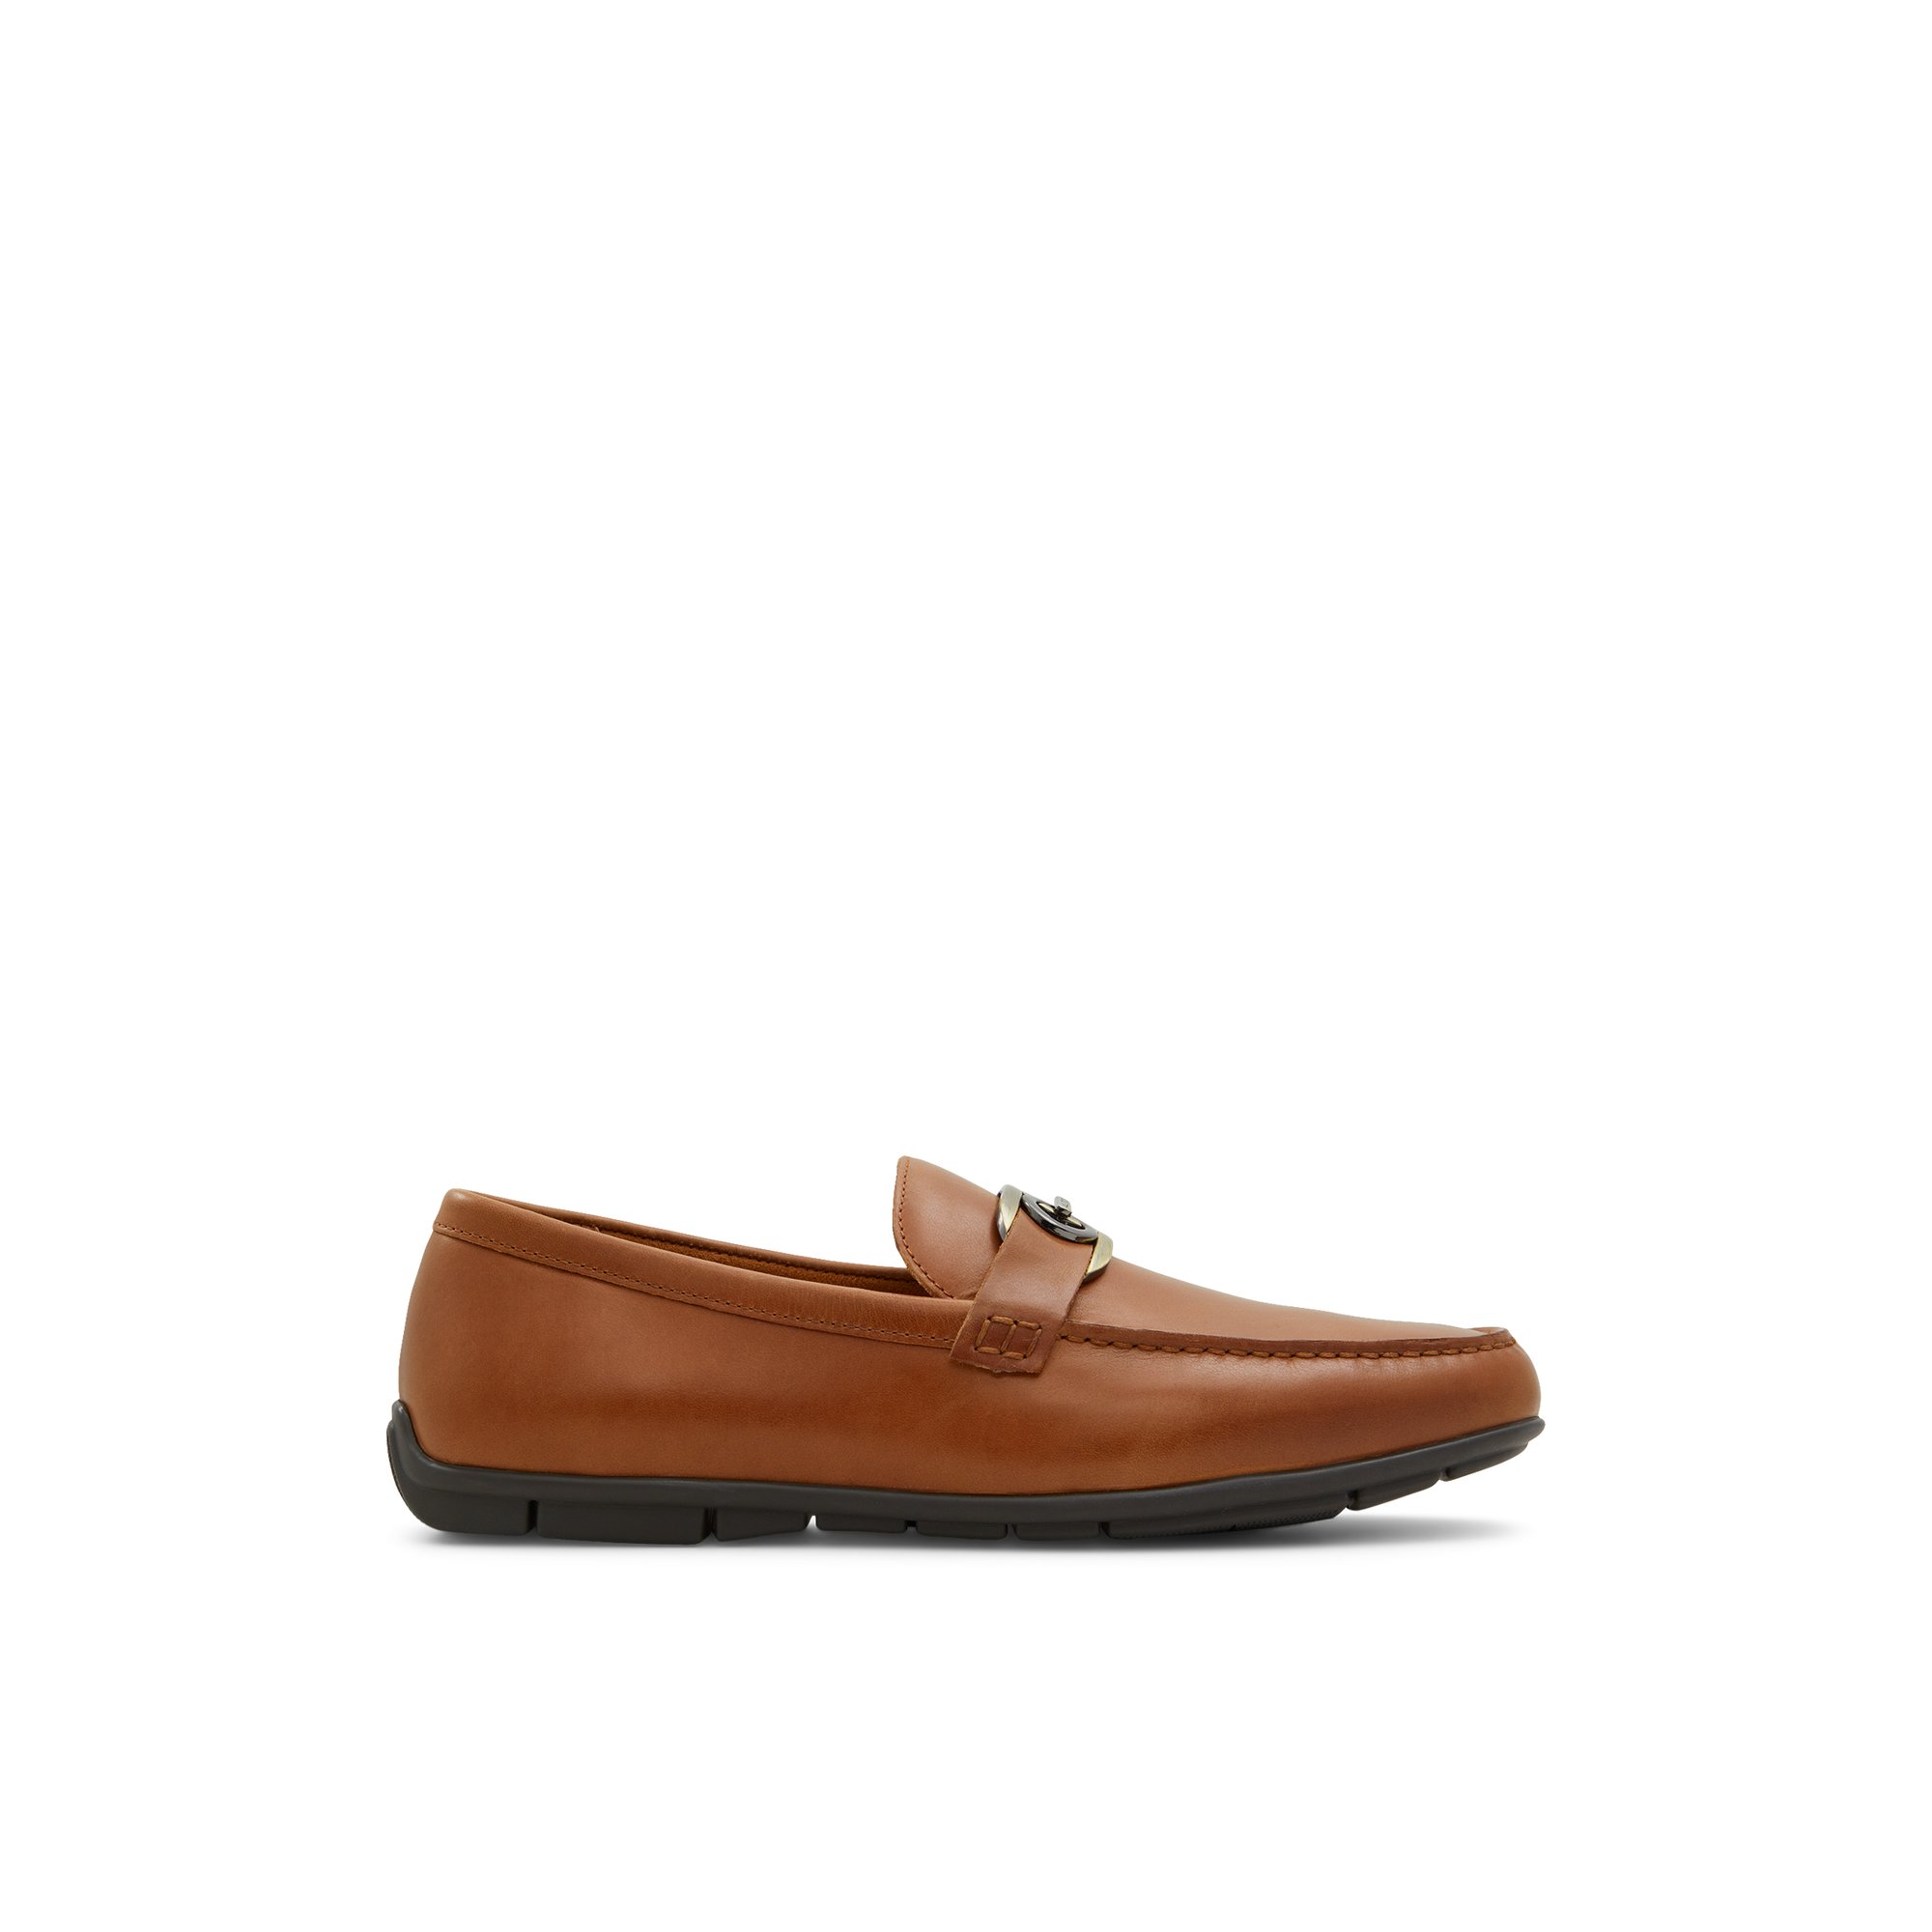 ALDO Haan - Men's Casual Shoes - Brown